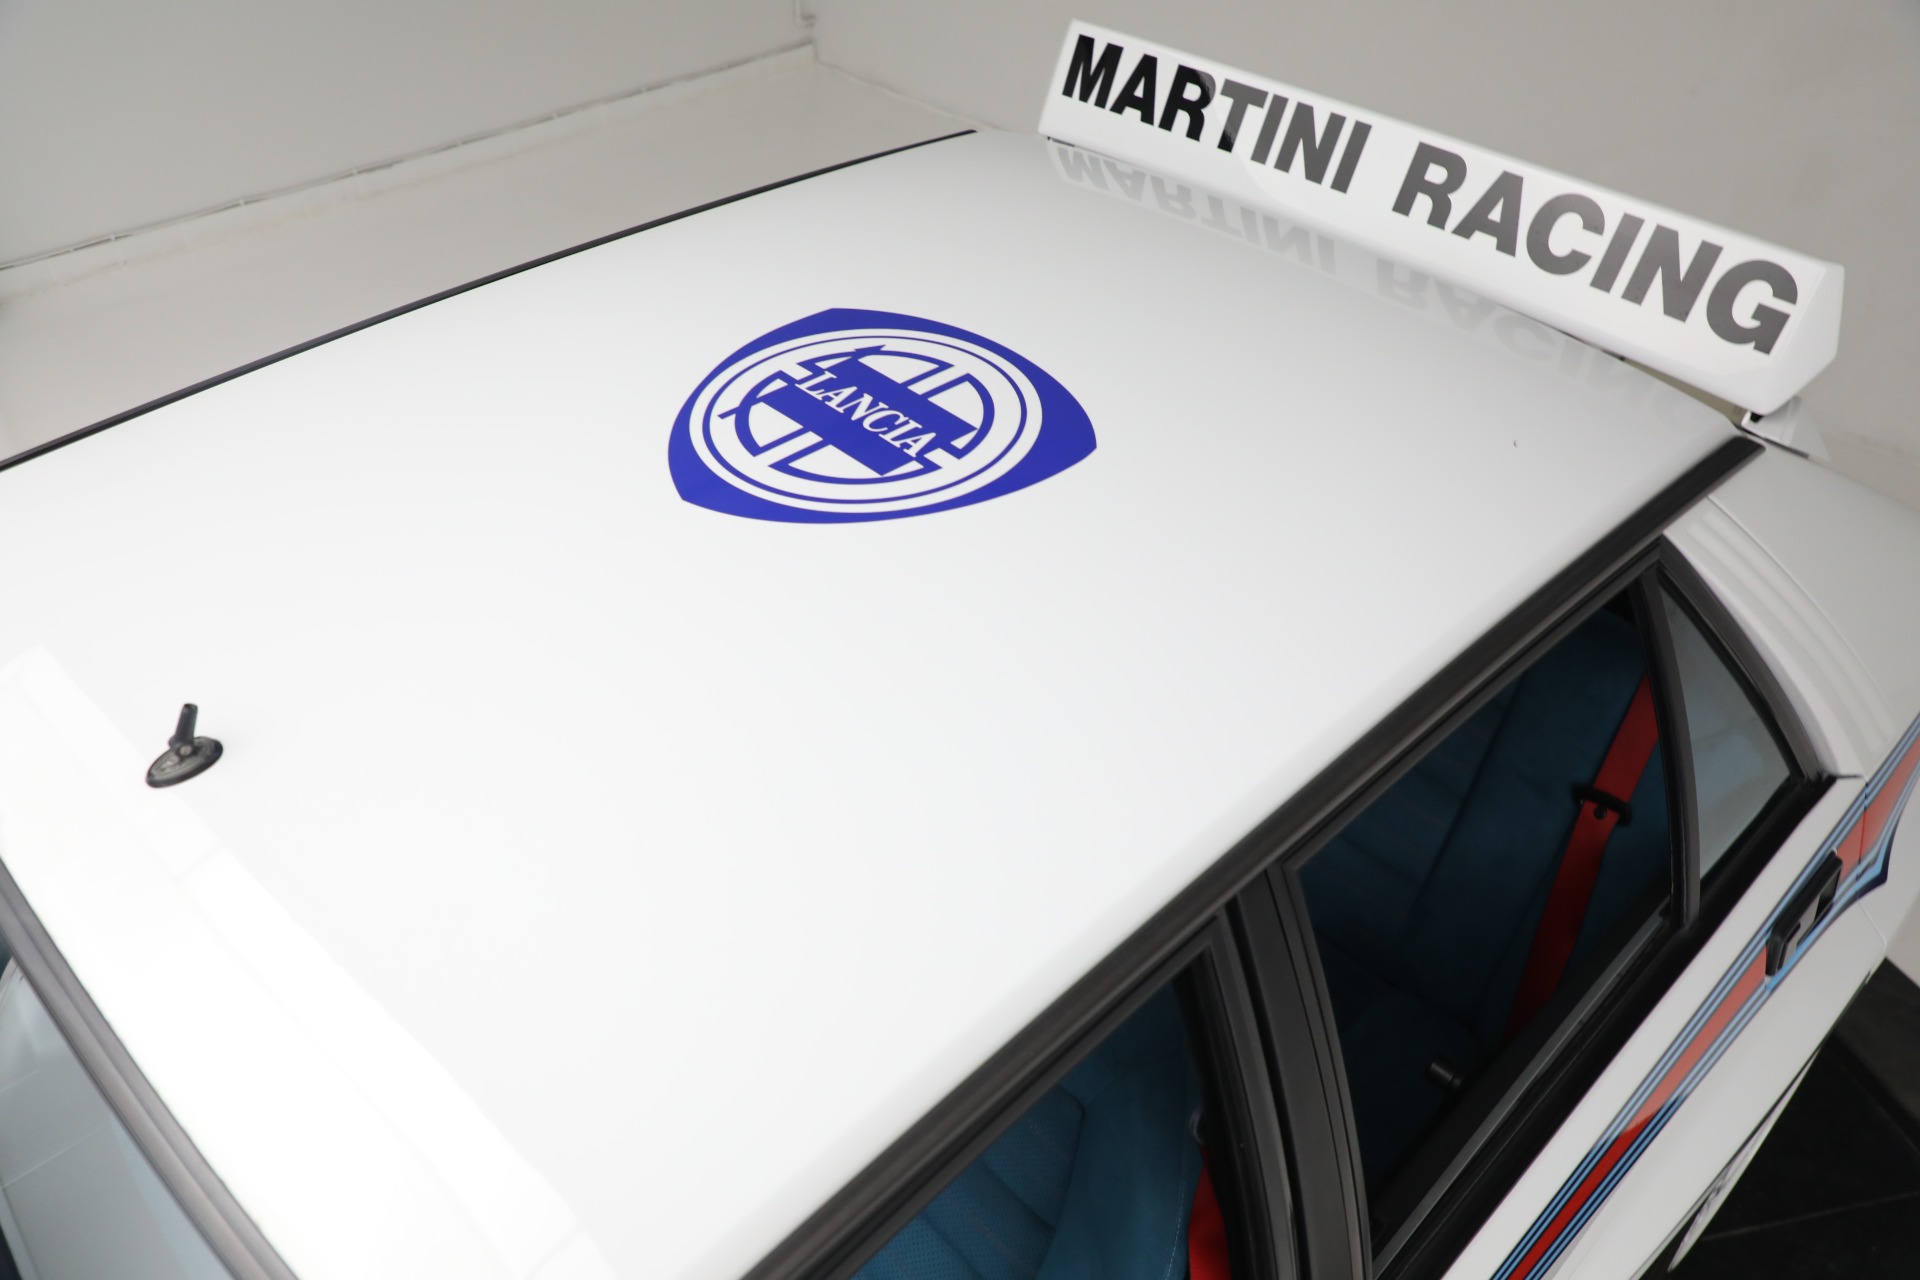 Used 1992 Lancia Delta Integrale Evo 1 Martini 6 Edition